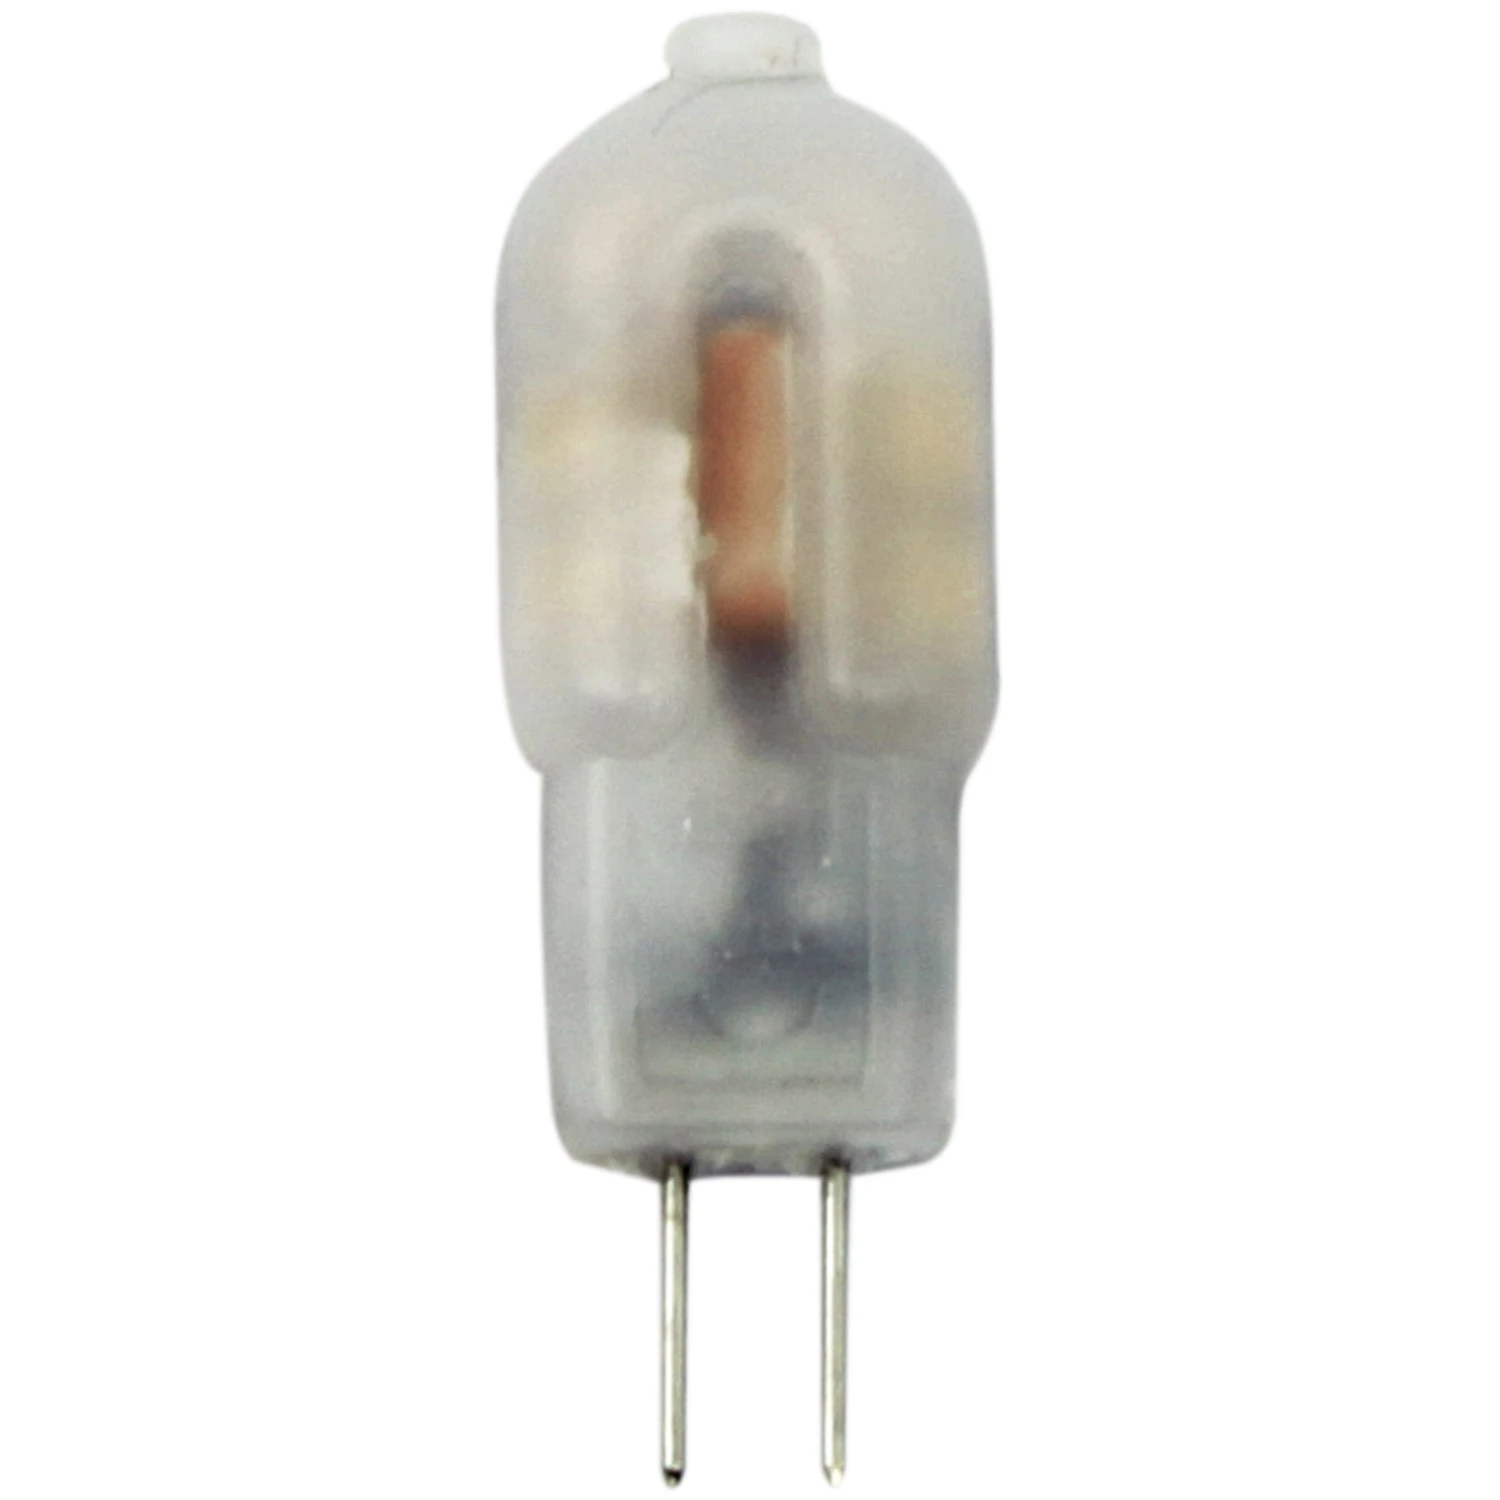  LED-Leuchtmittel Pin G4 / 1,2 W (100 lm) Warmweiß